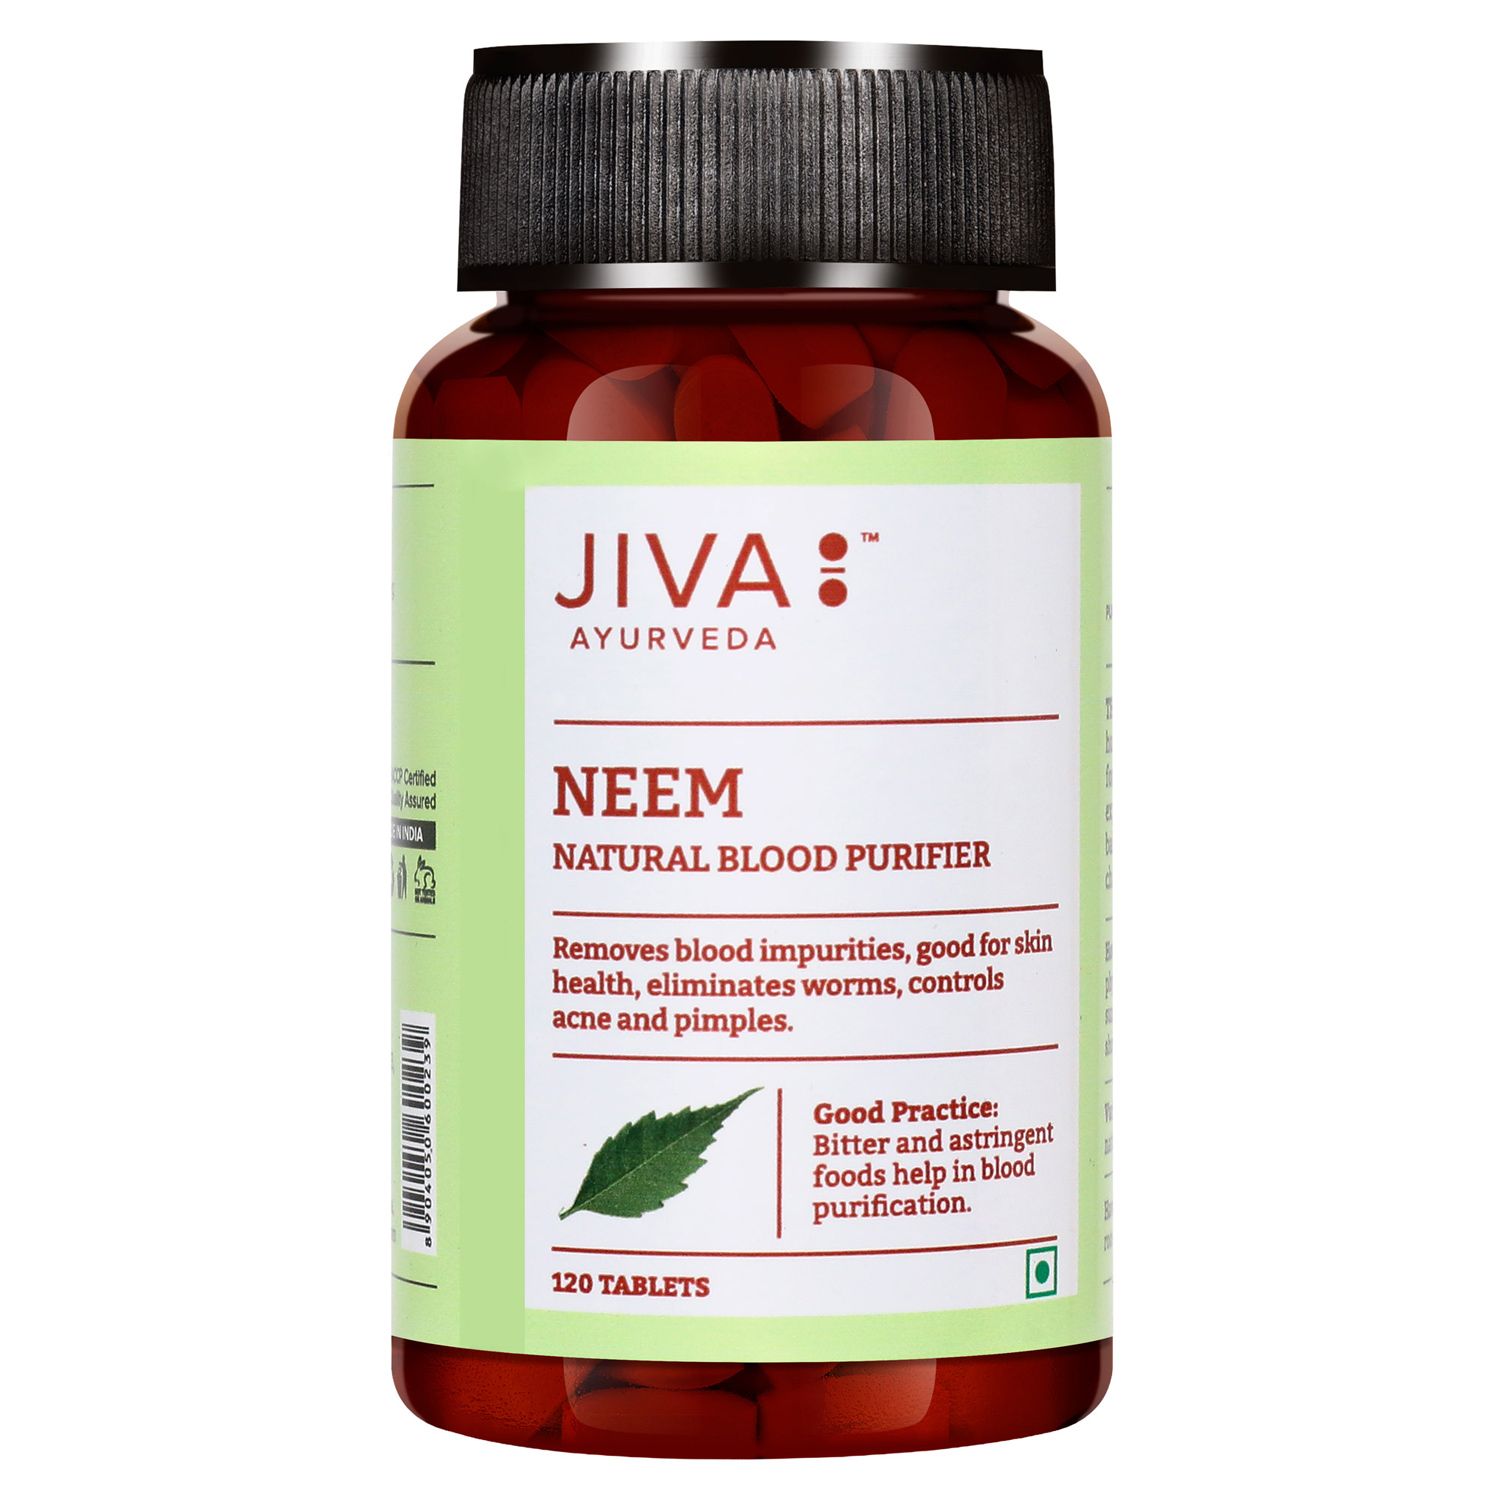 Buy Jiva Ayurveda Neem Tablets at Best Price Online